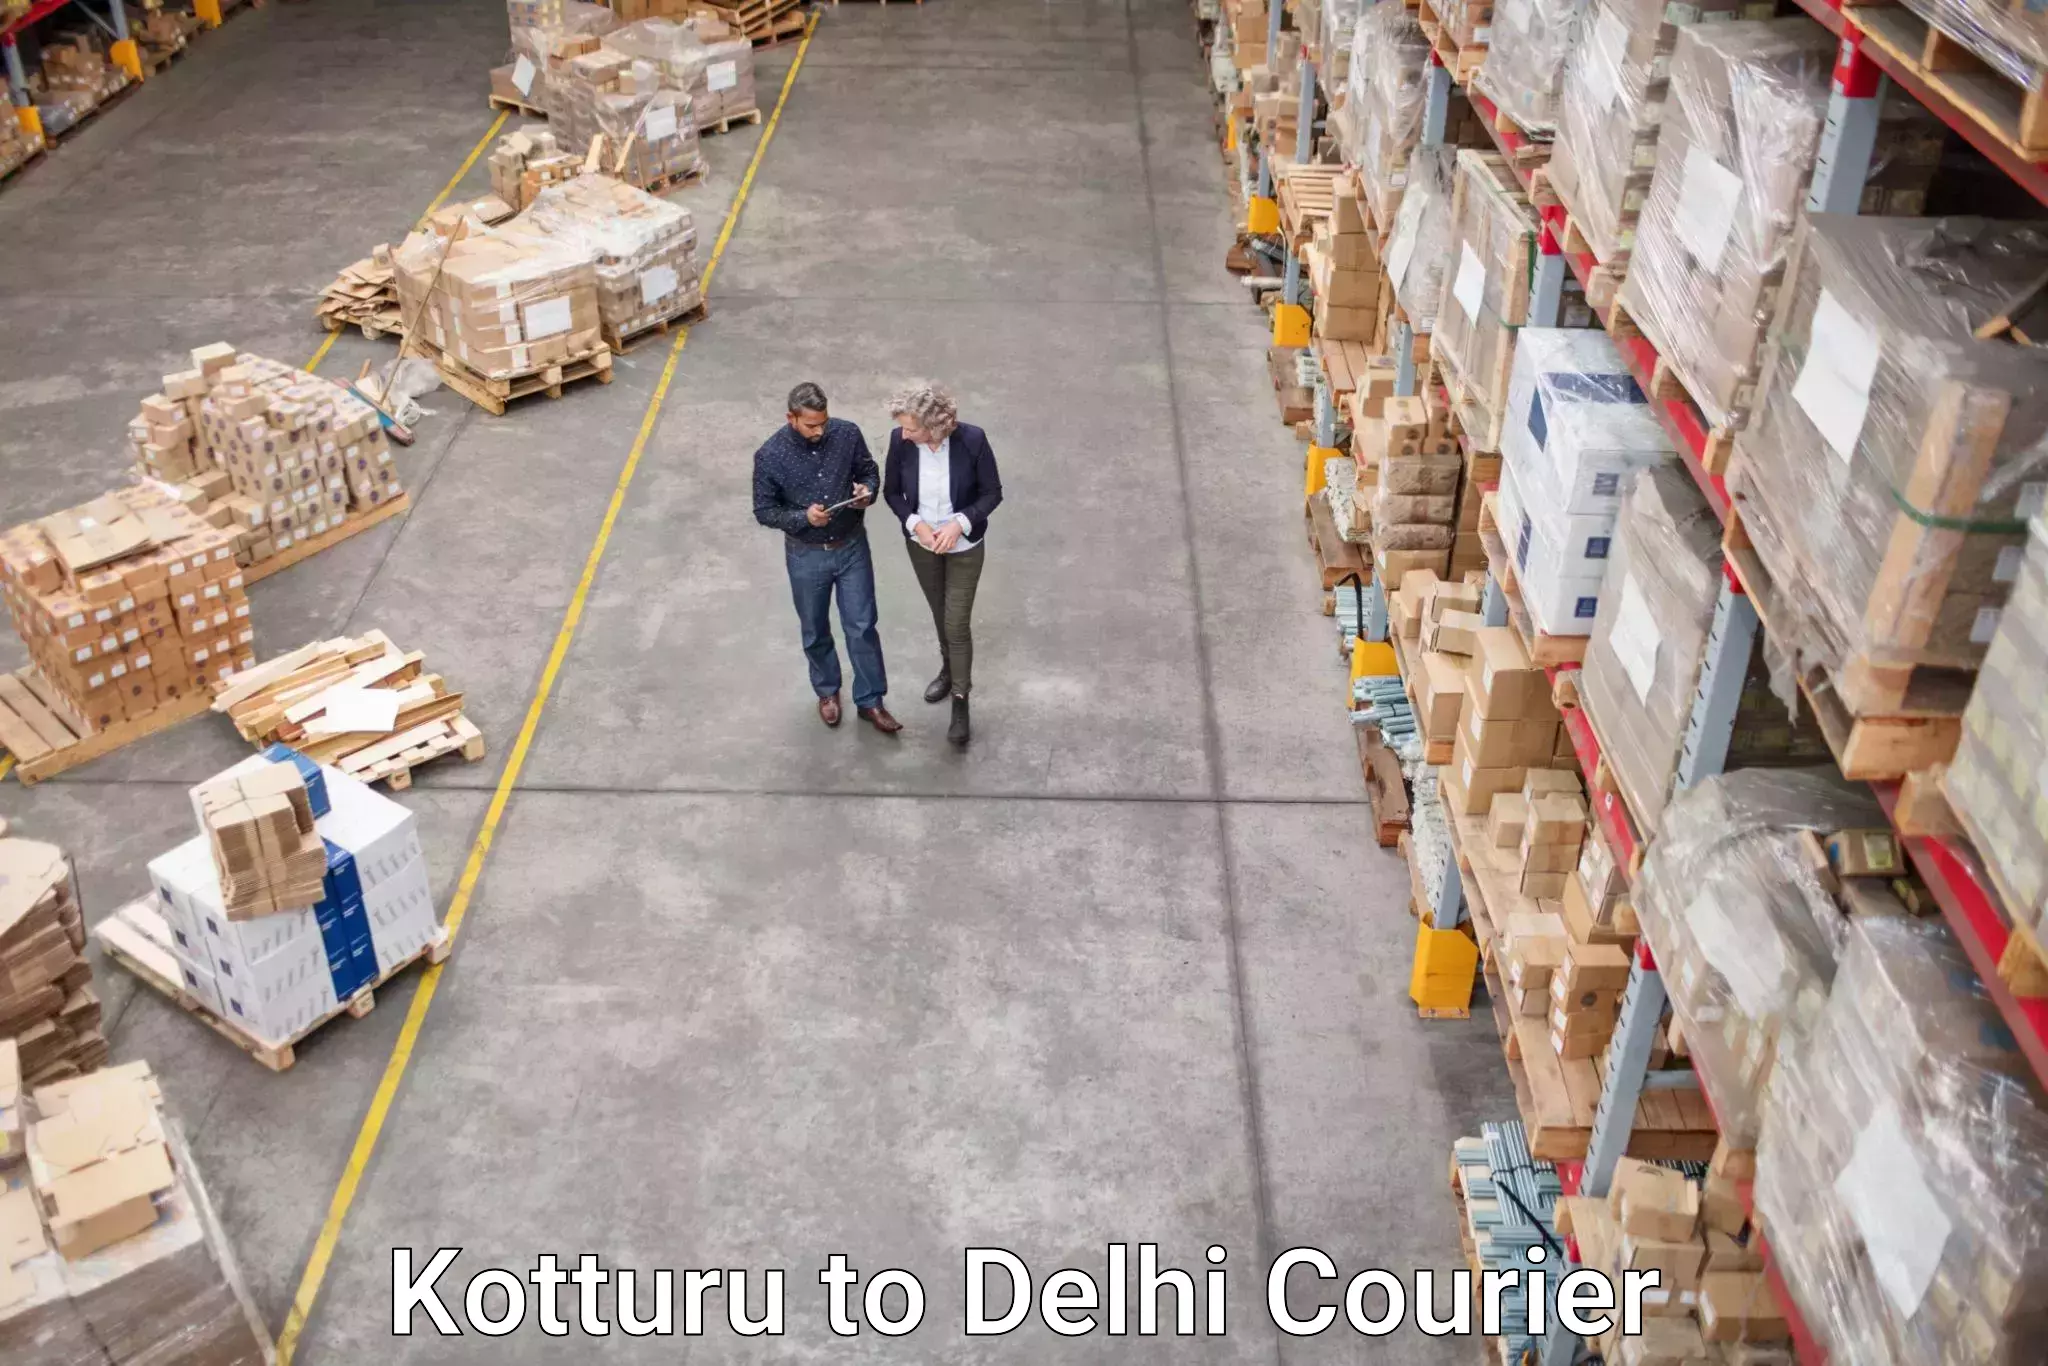 Express delivery solutions Kotturu to Sansad Marg